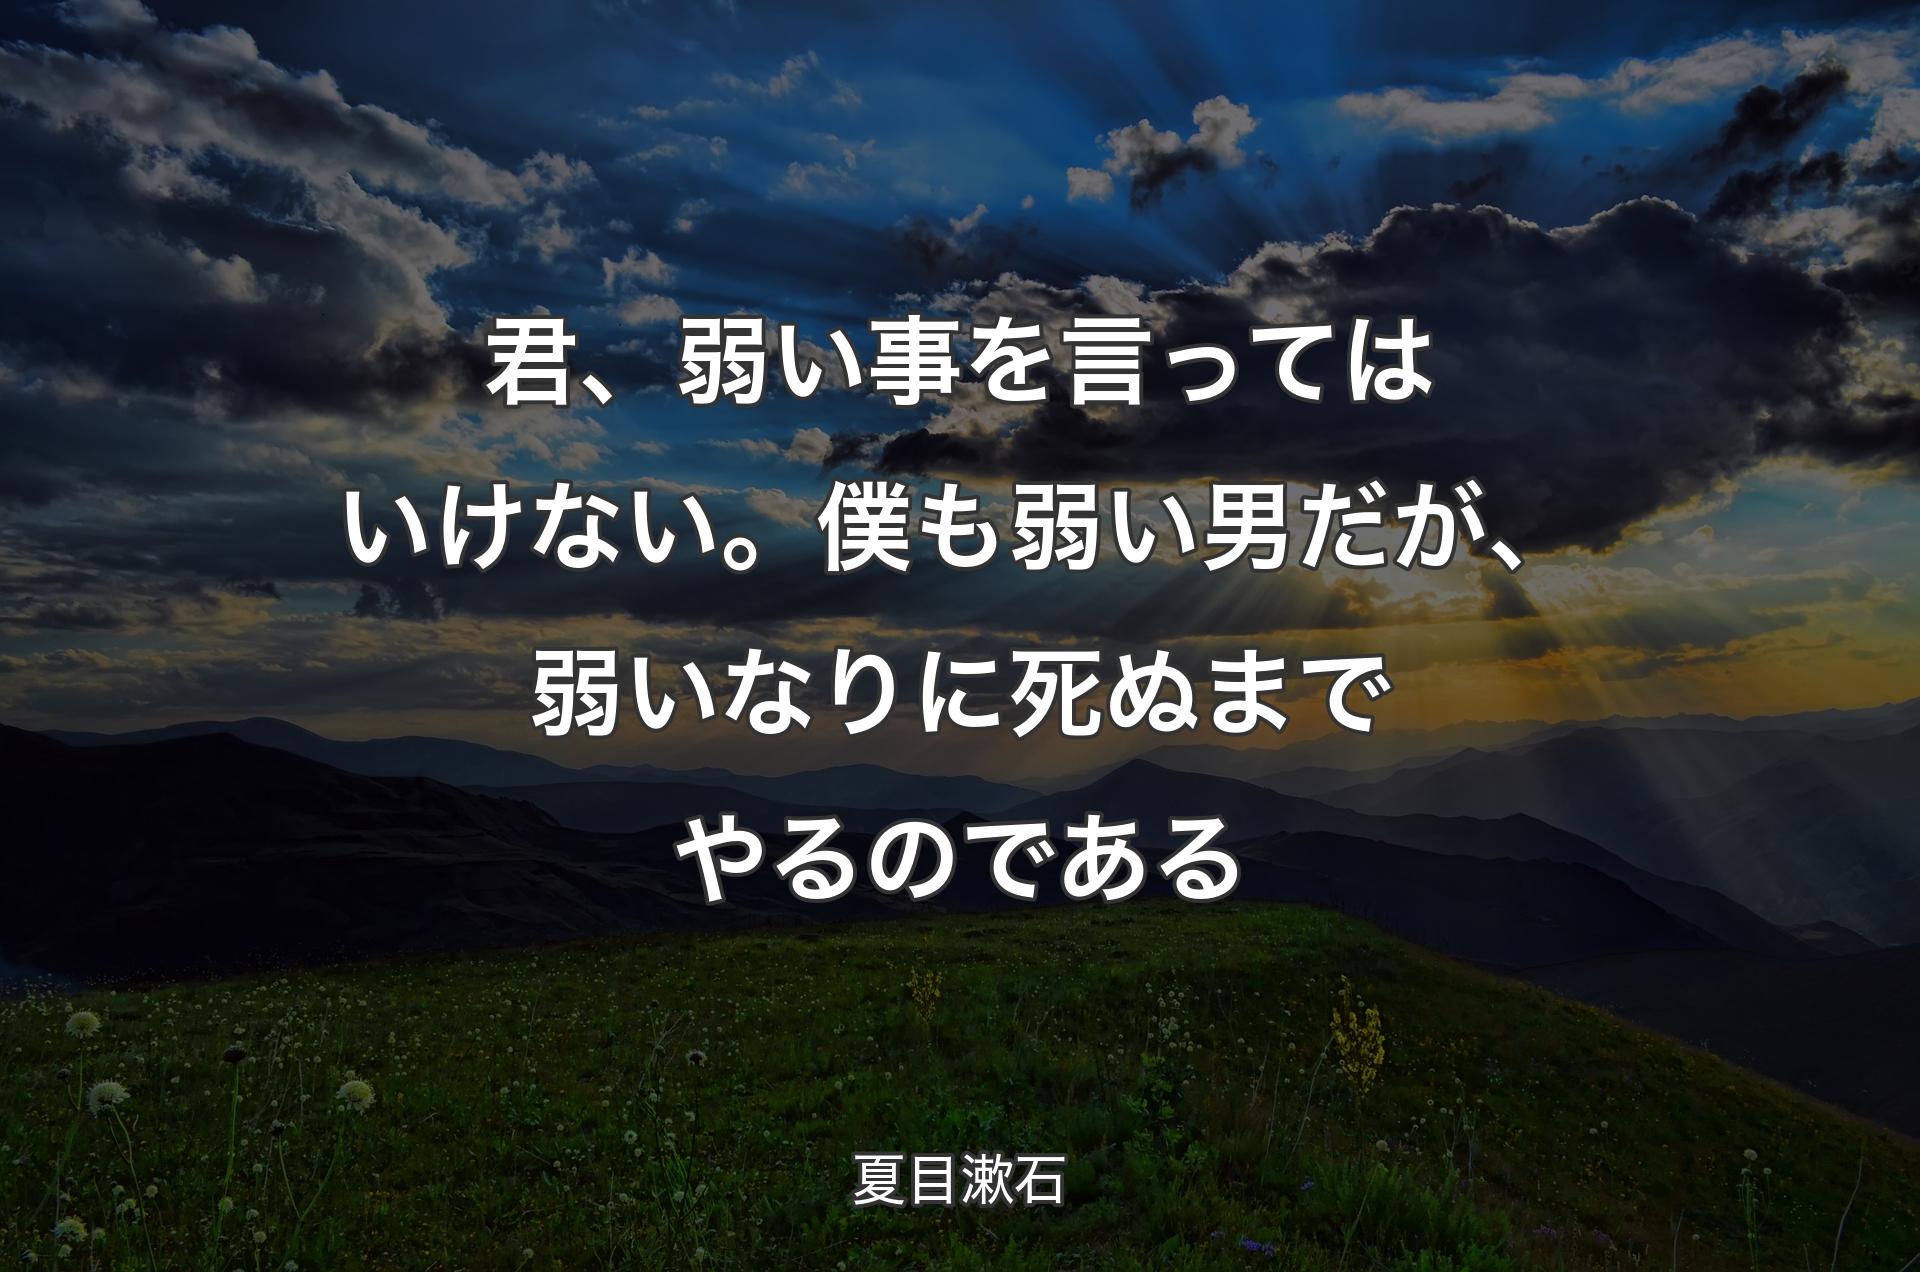 君、弱い事を言ってはいけない。僕も弱い男だが、弱いなりに死ぬまでやるのである - 夏目漱石